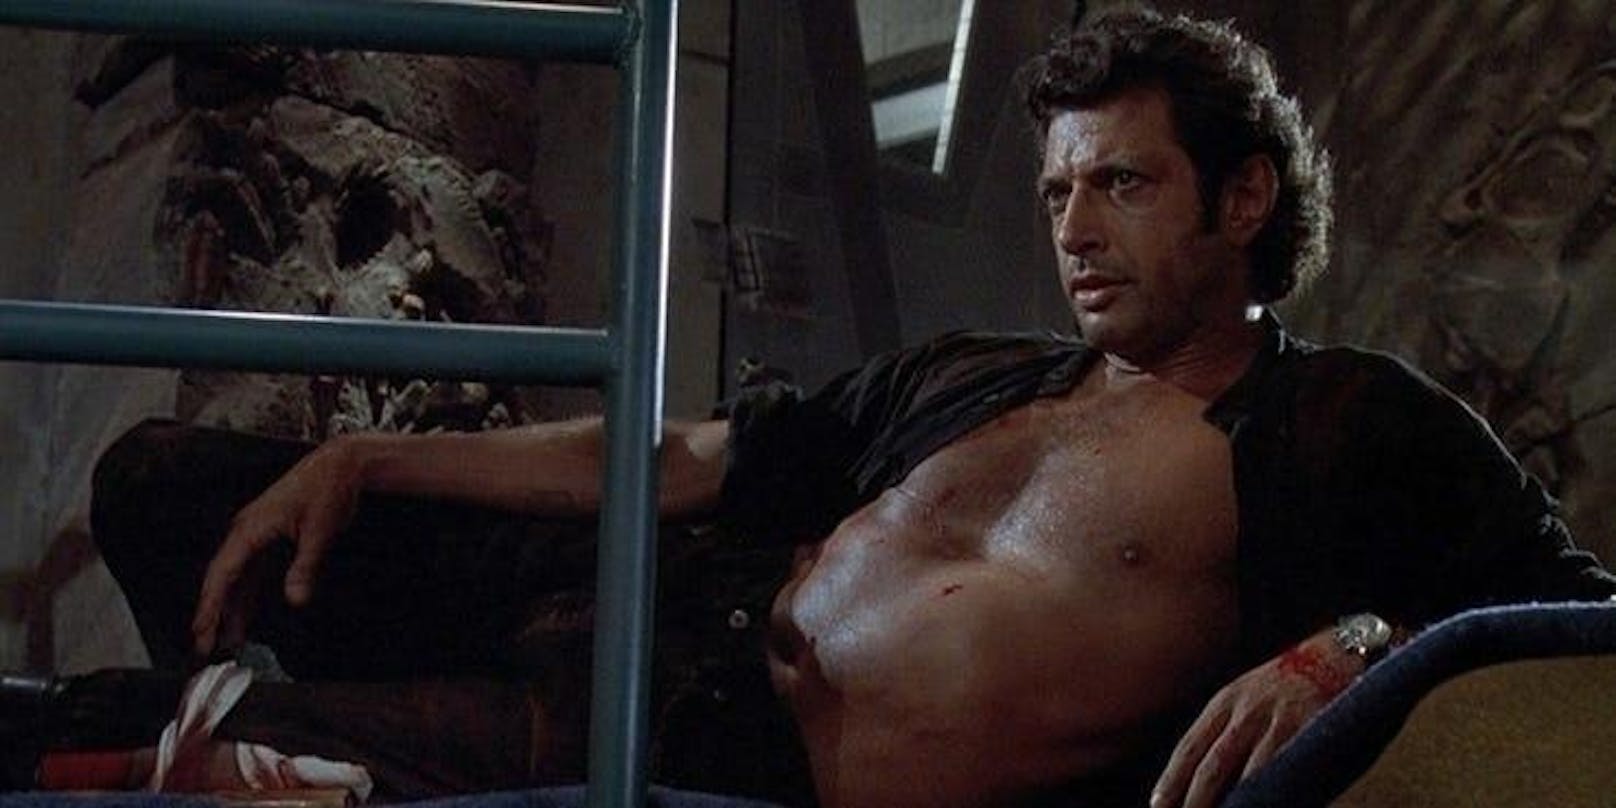 Das Original: Bis heute rätseln die Fans, warum Jeff Goldblum in Jurassic Park (Teil 1) mit nacktem Oberkörper herumliegen musste, während draußen die Dinos seine Kollegen verspeisten